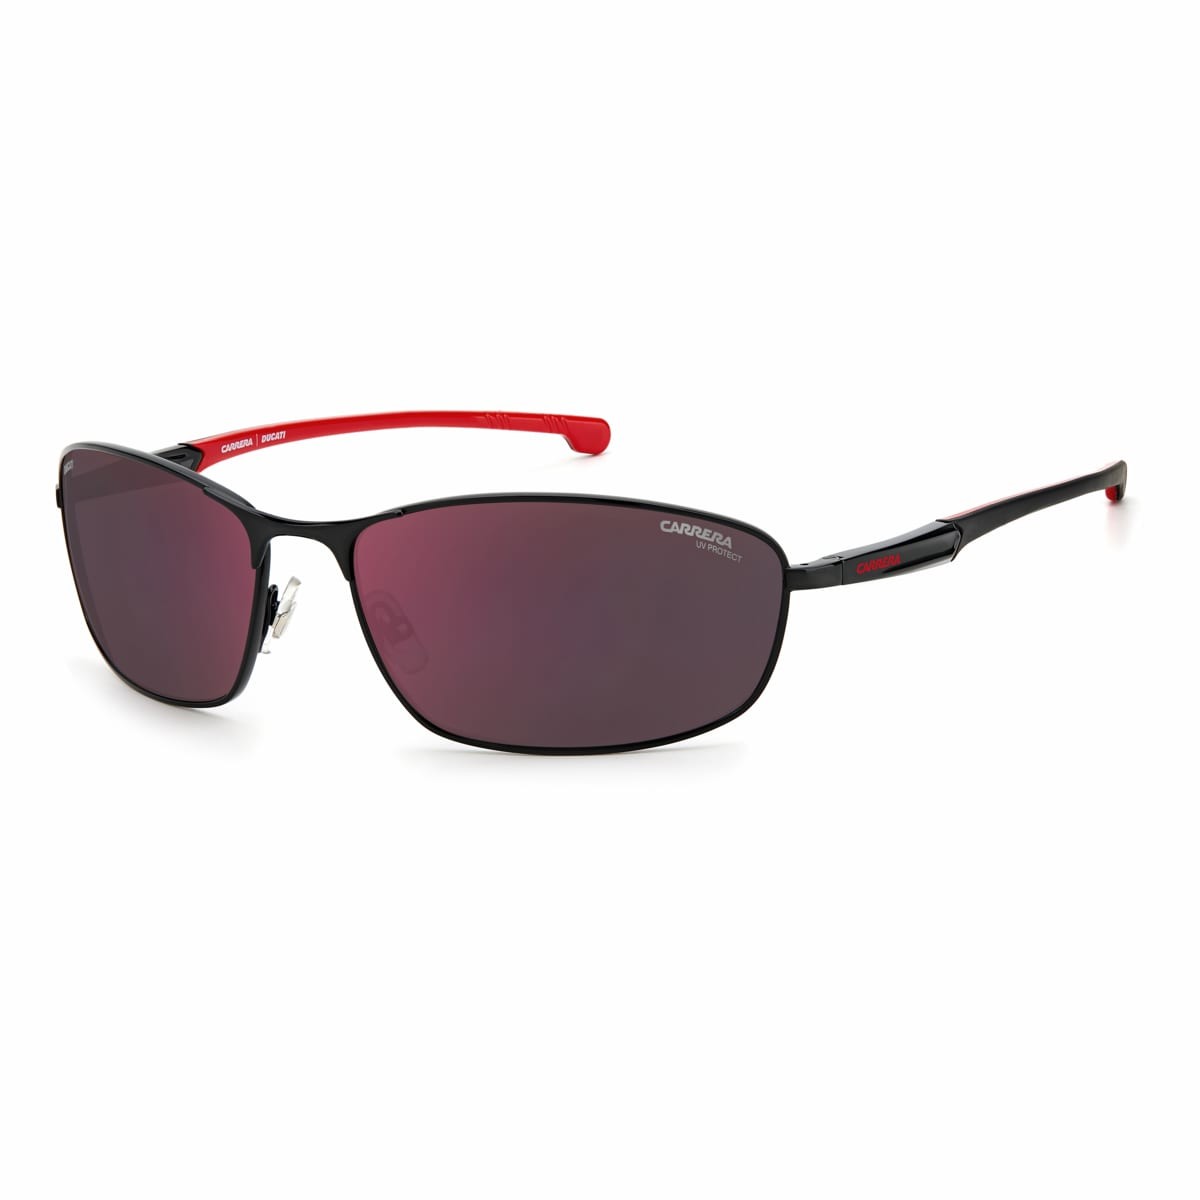 Monterey - Sunglasses